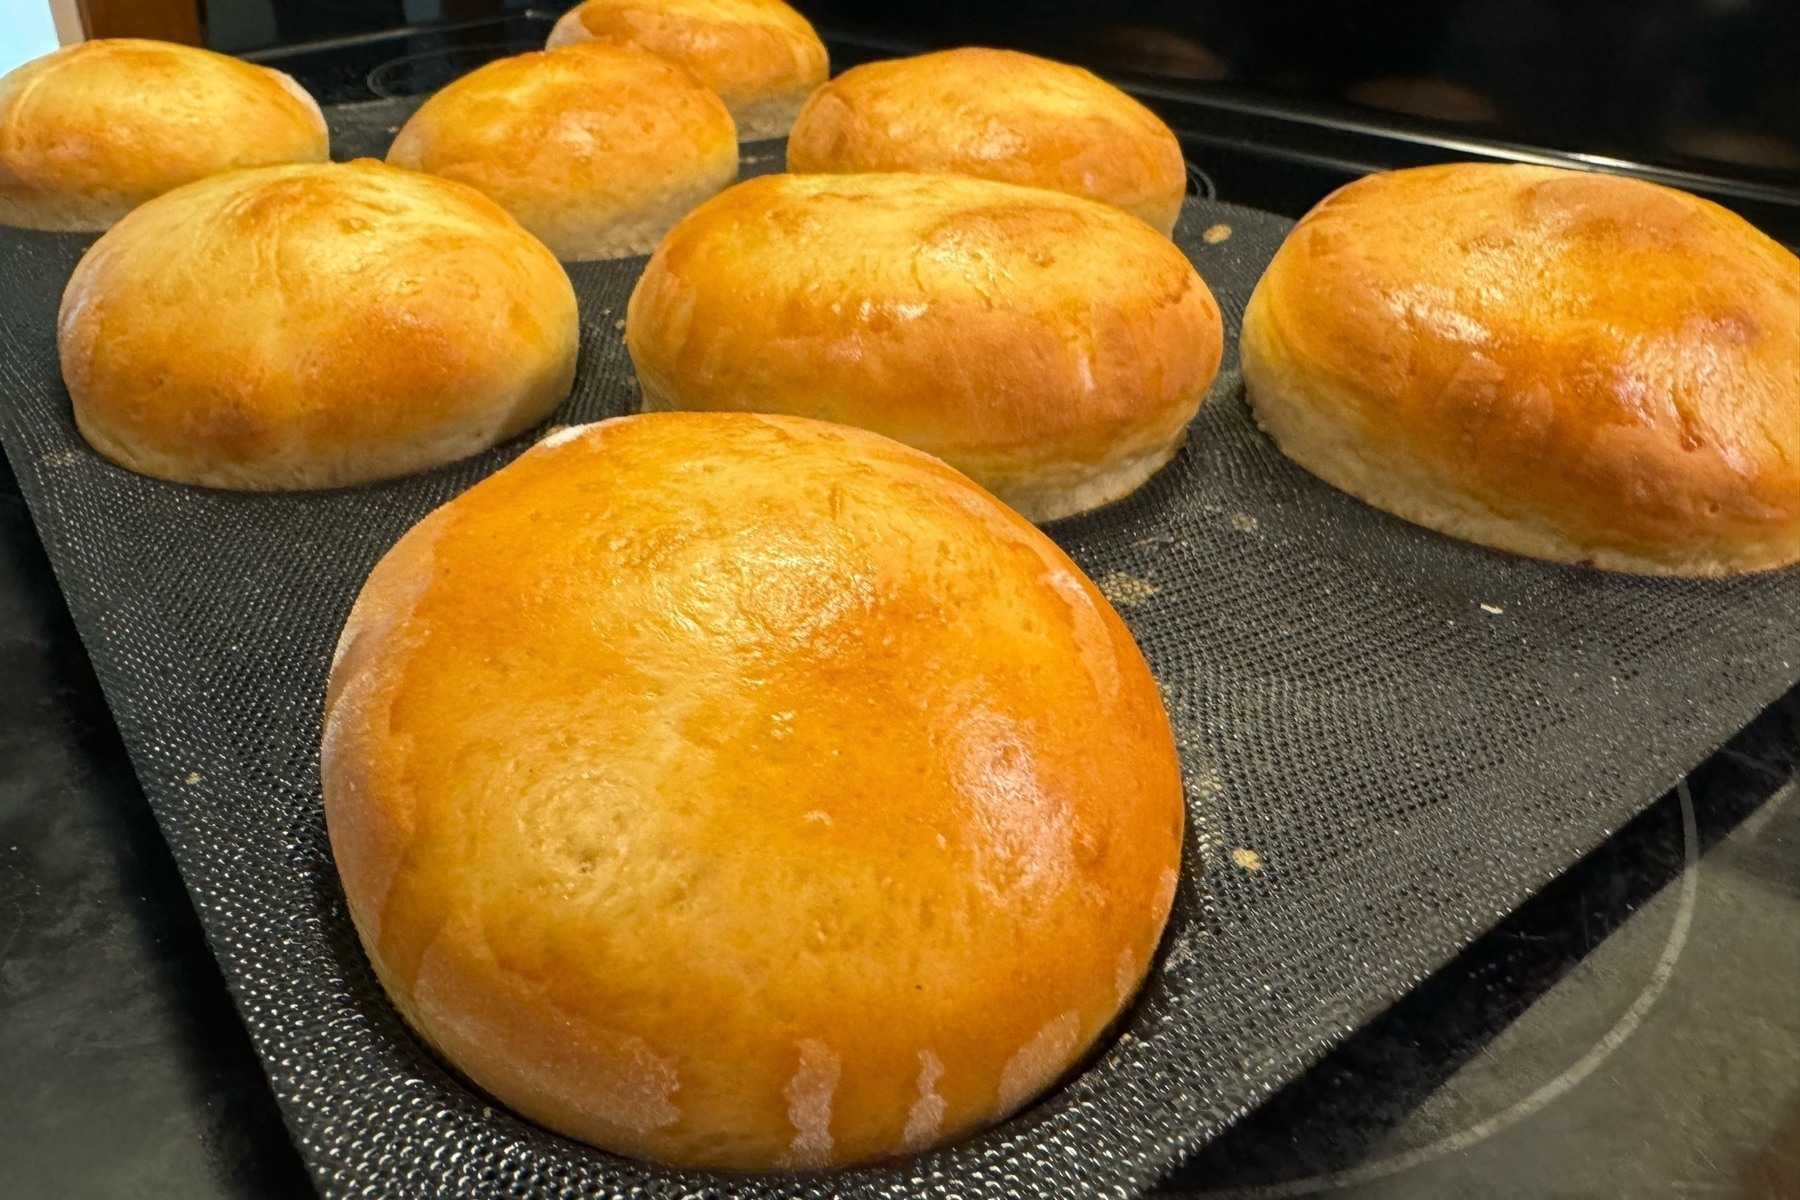 Golden hamburger buns sitting on a baking tray at an angle. 